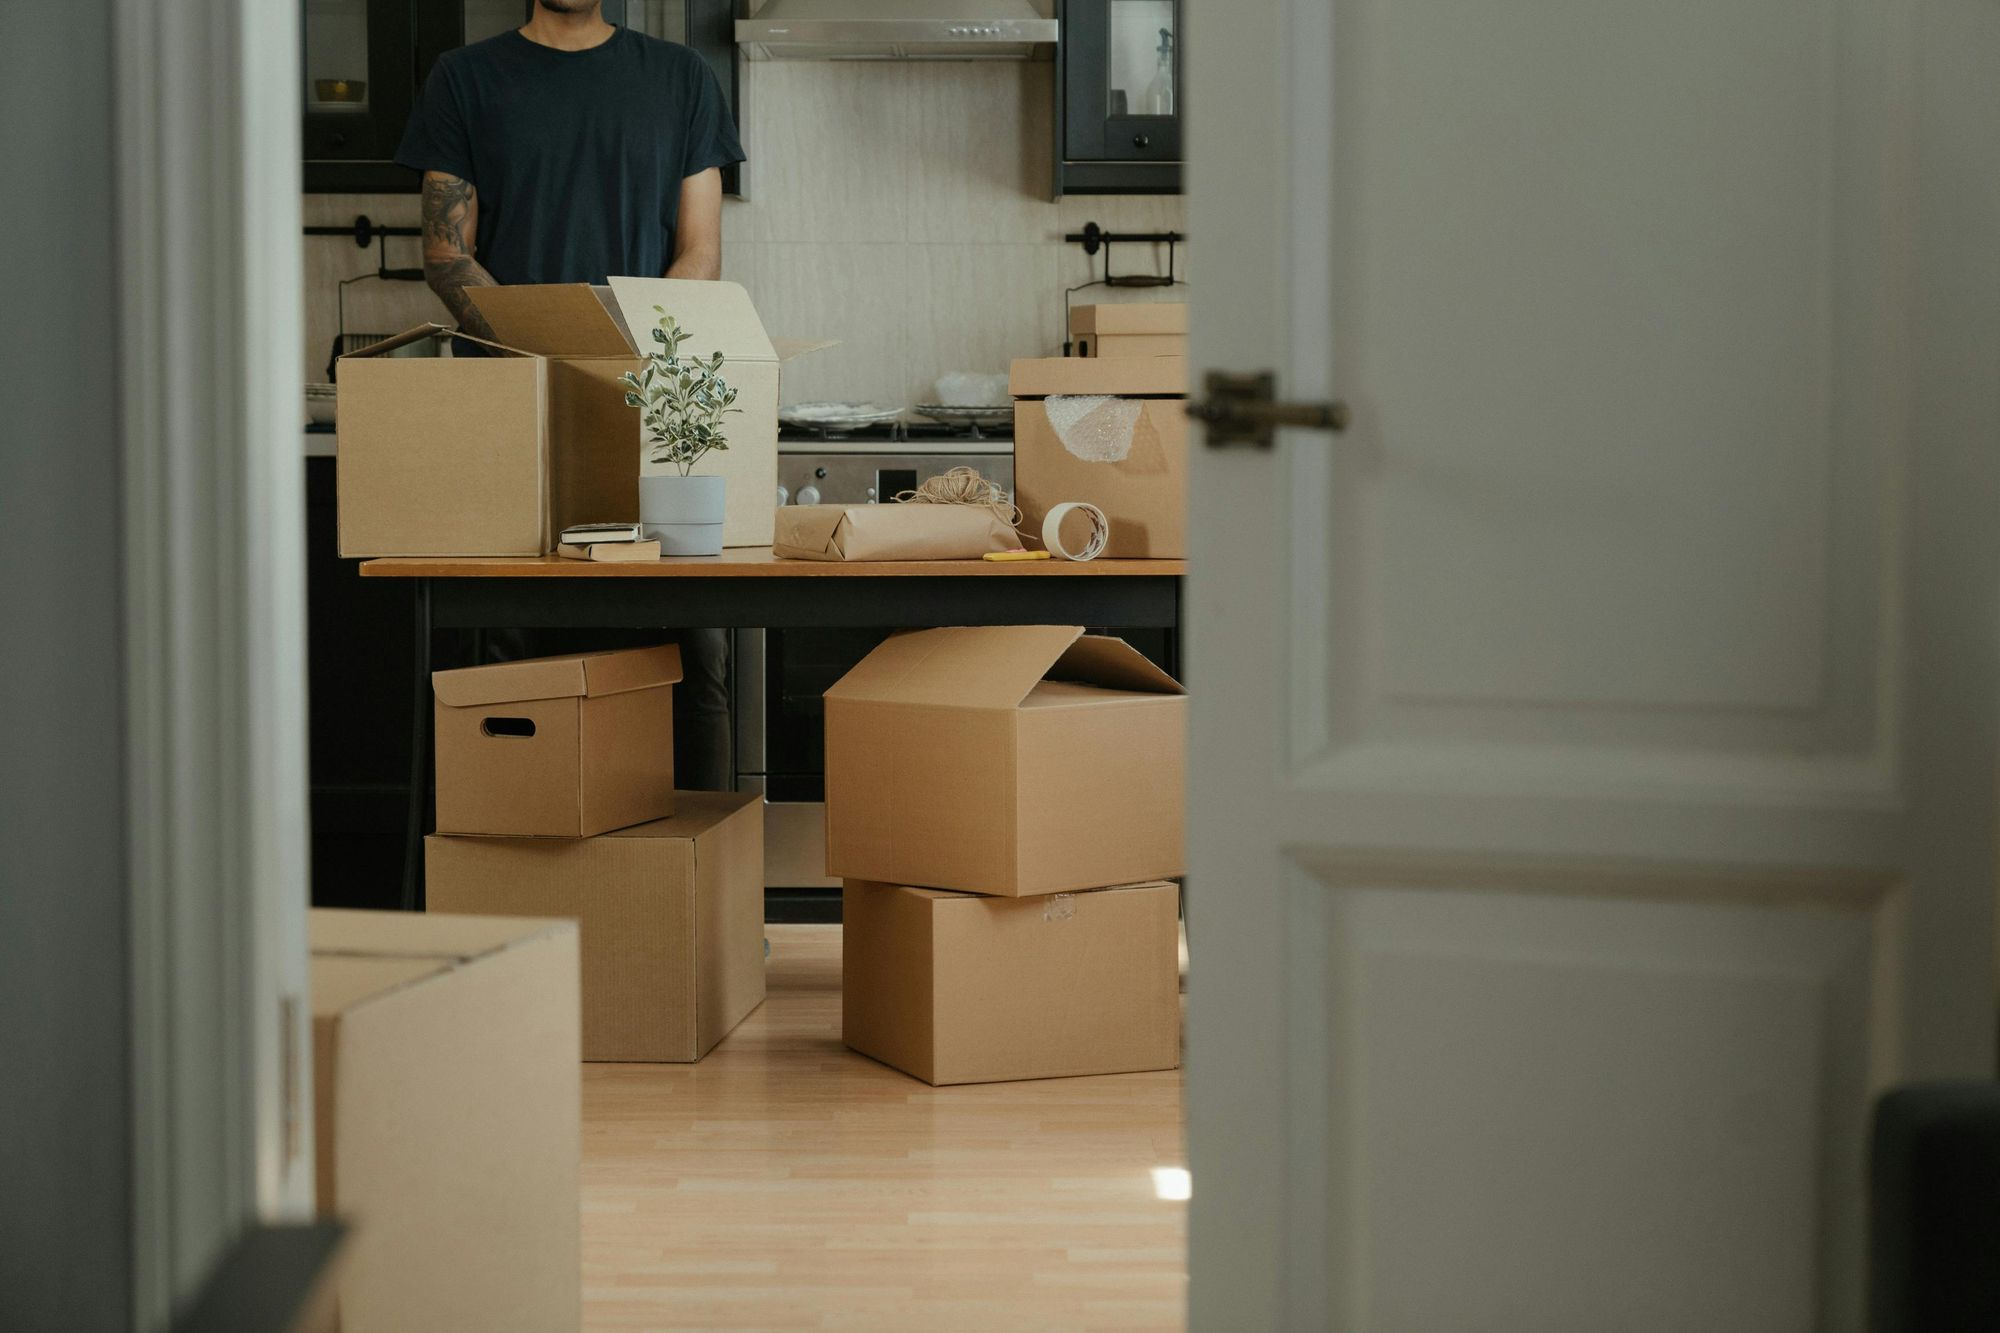 Emménager en couple :
les 4 indispensables pour un emménagement en toute sérénité